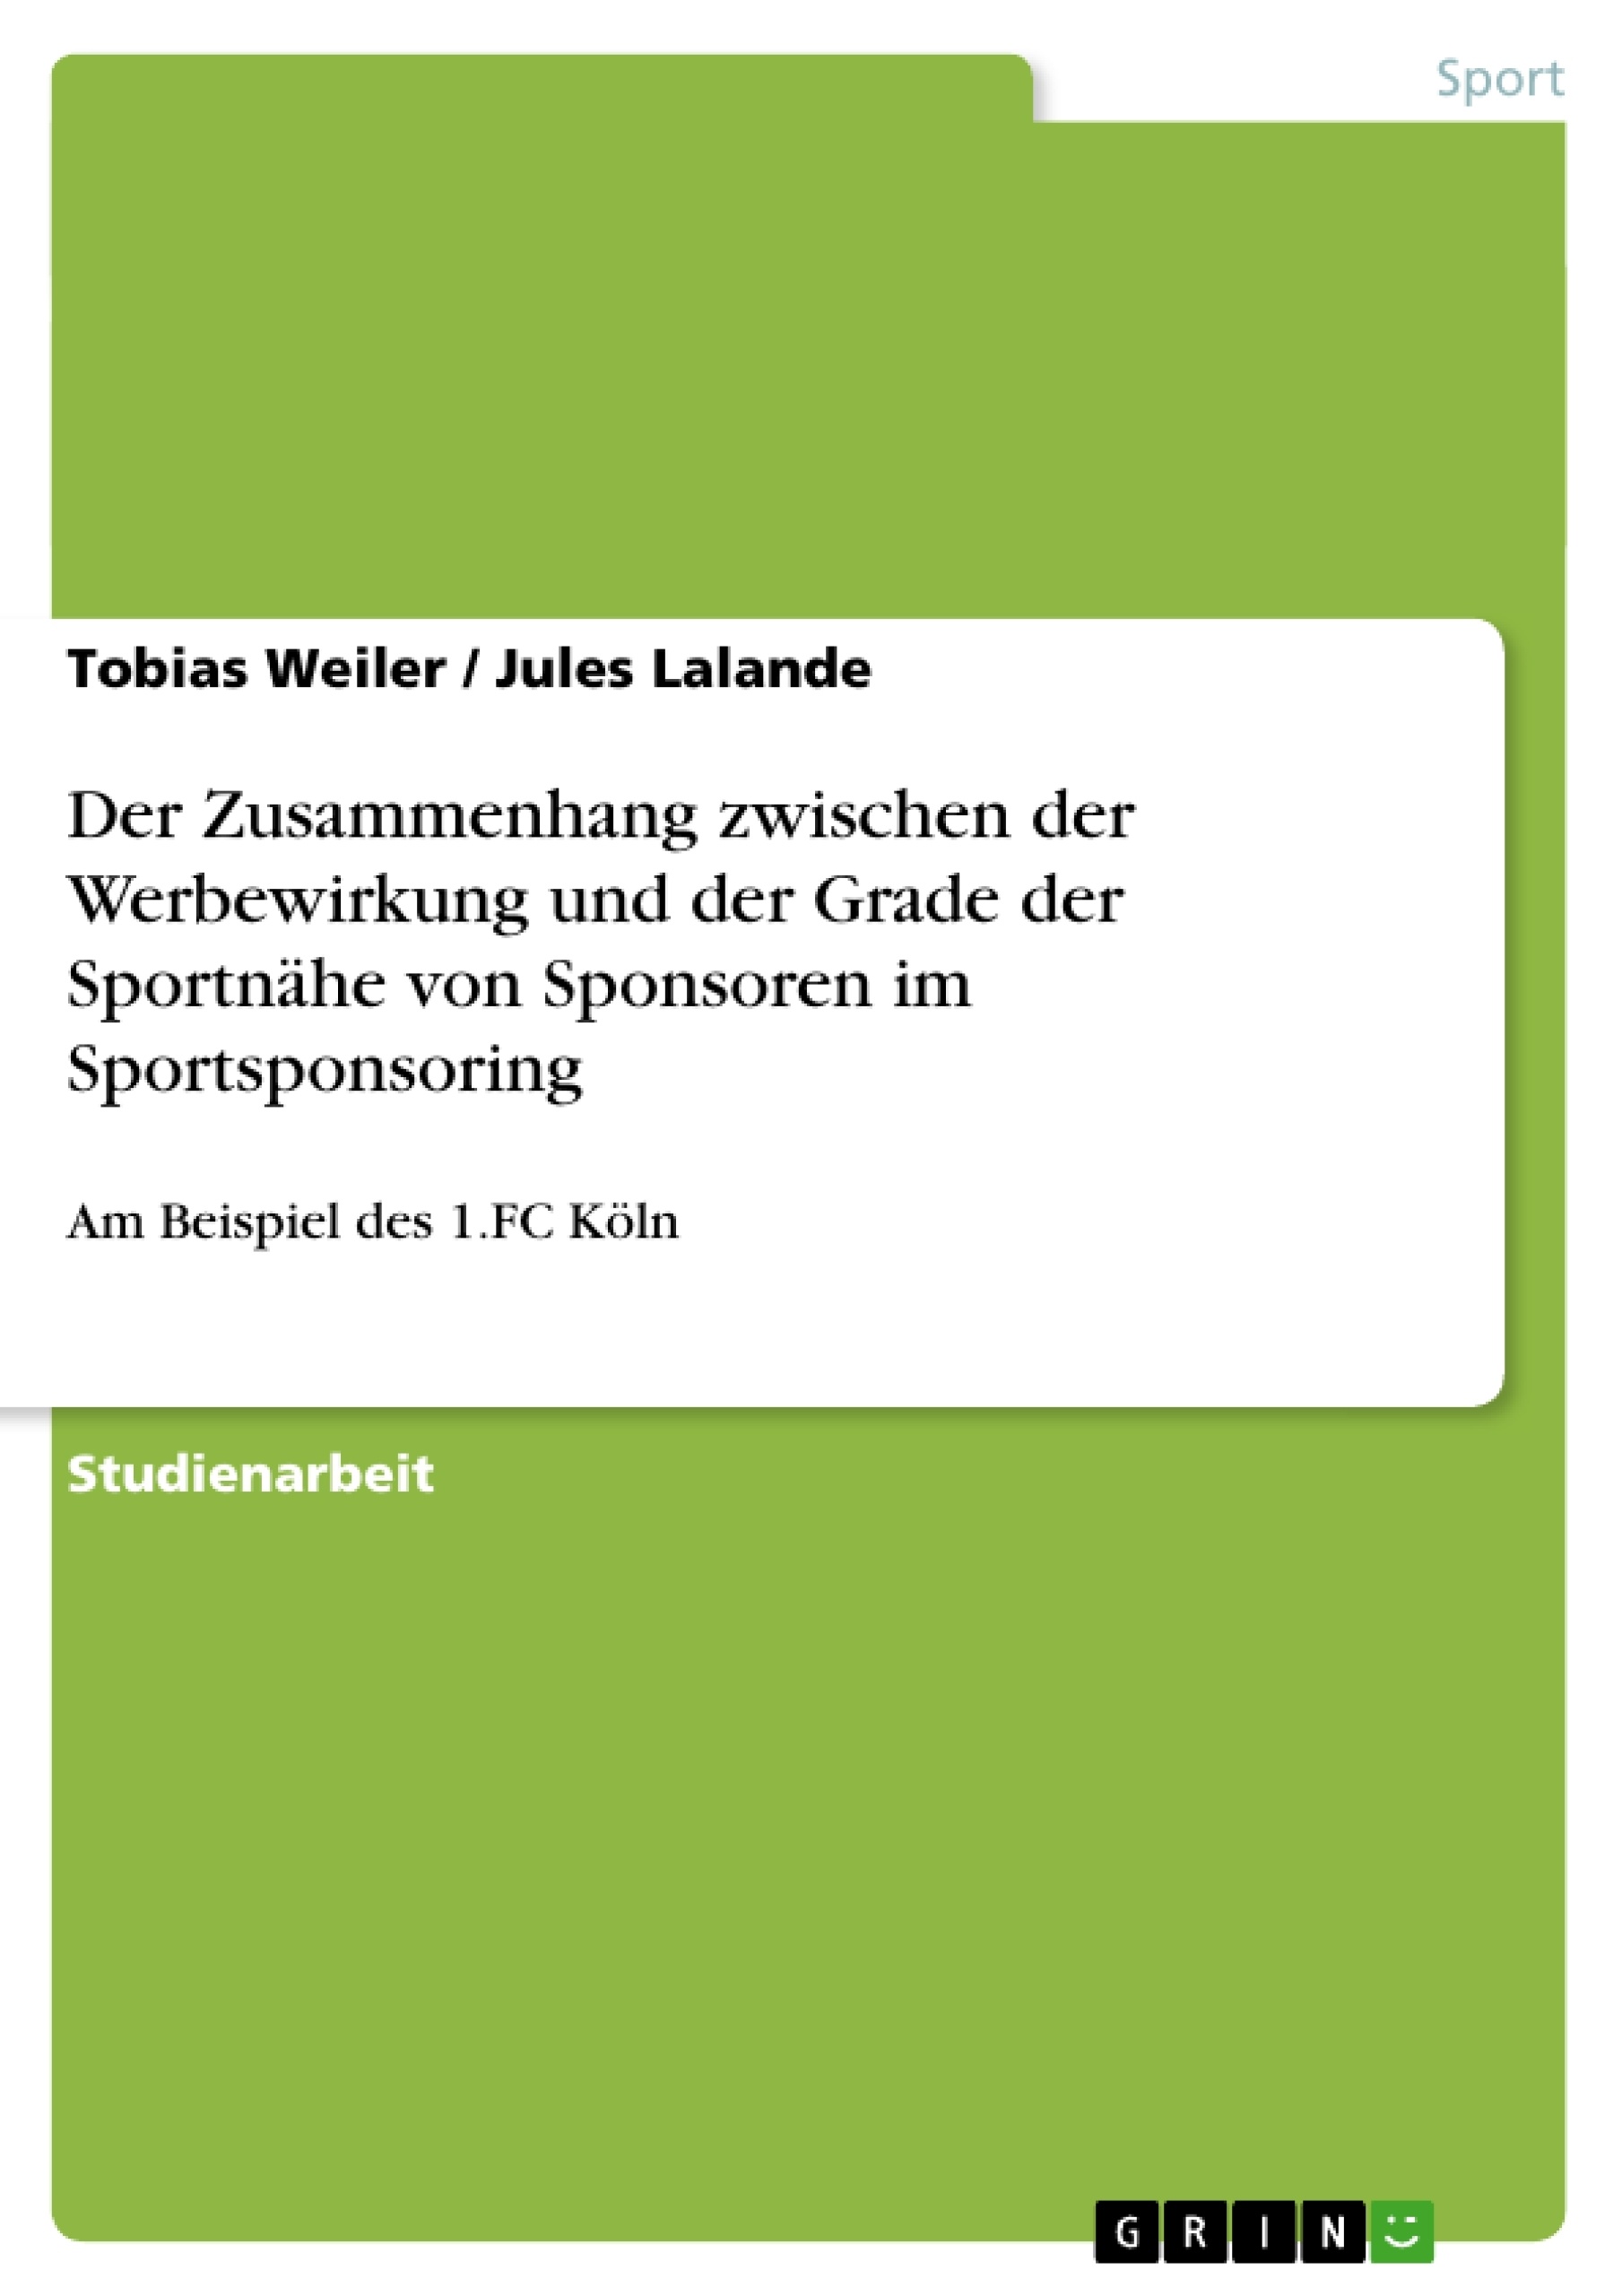 Title: Der Zusammenhang zwischen der Werbewirkung und der Grade der Sportnähe von Sponsoren im Sportsponsoring